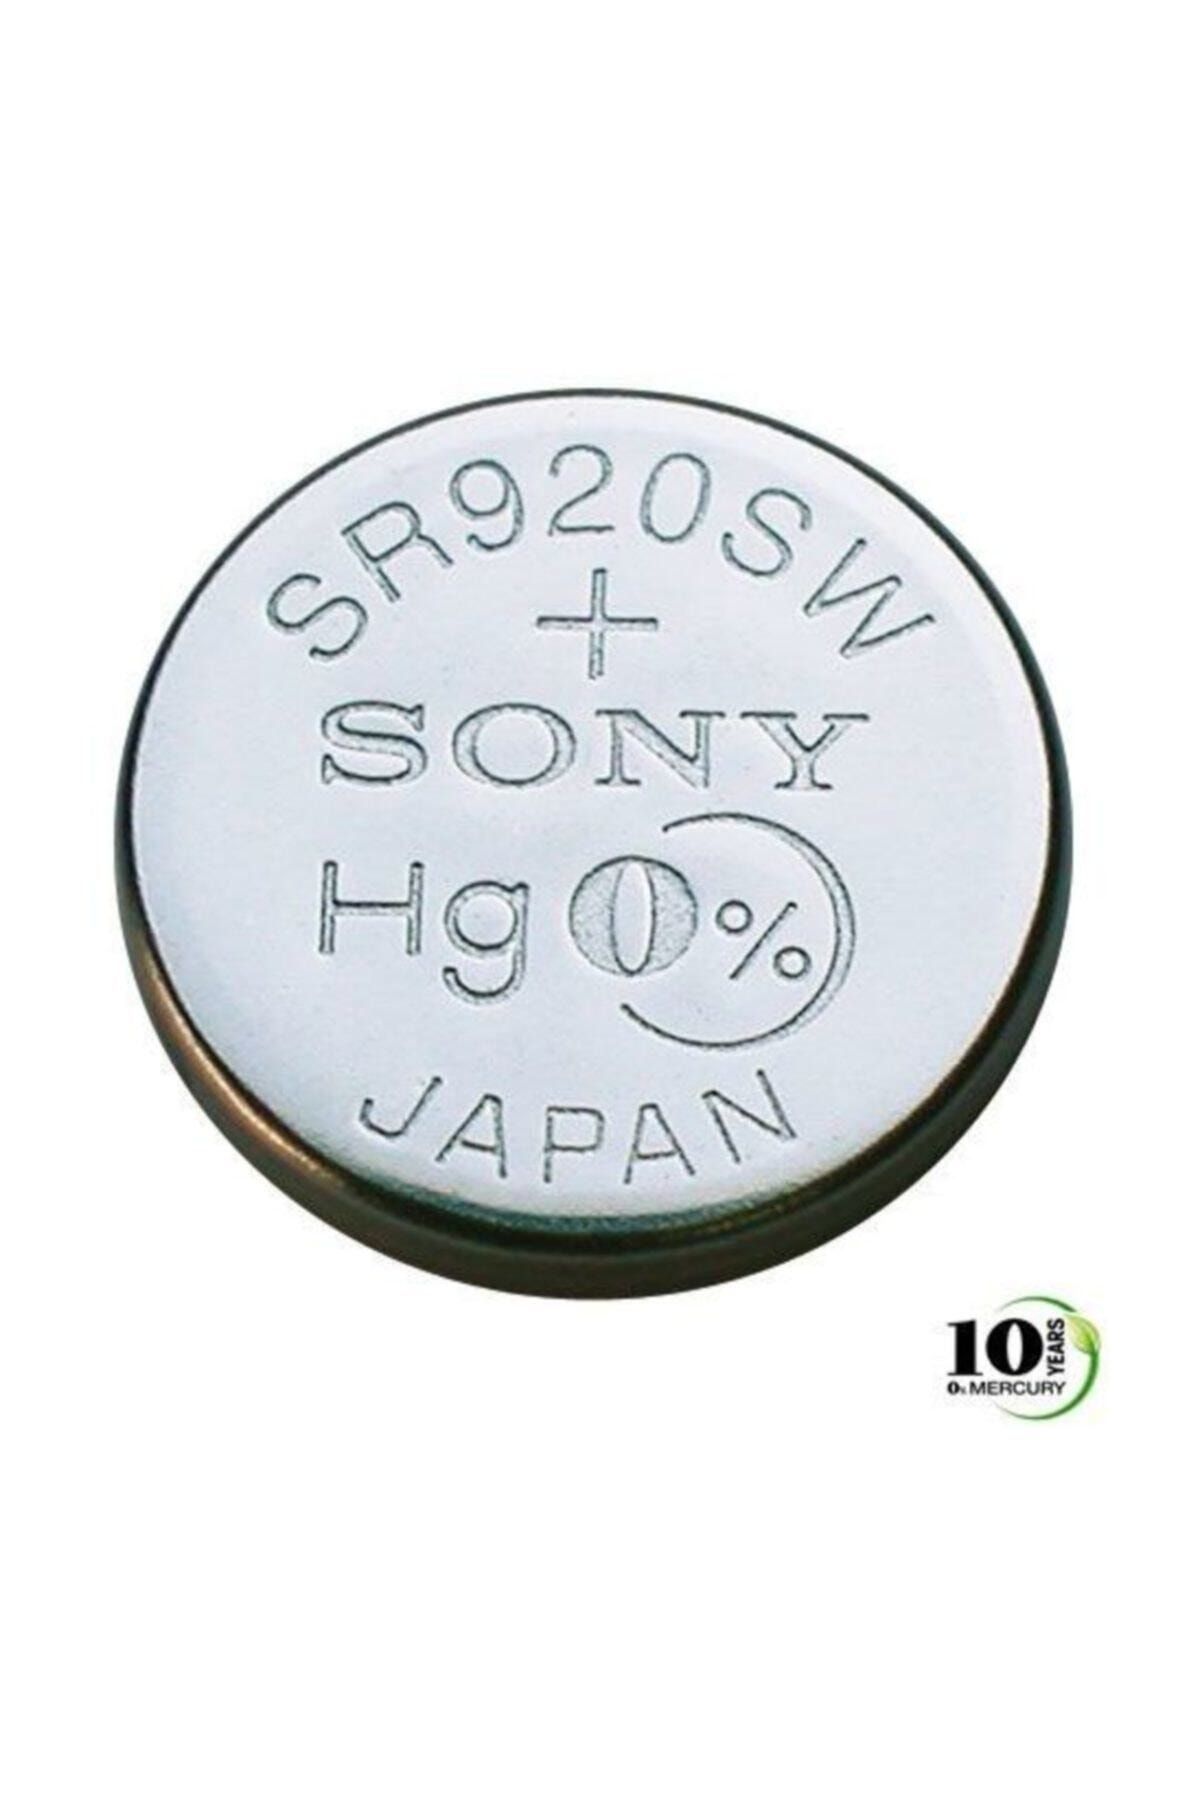 Sony Sr920sw Saat Pili Fiyatı, Yorumları - Trendyol